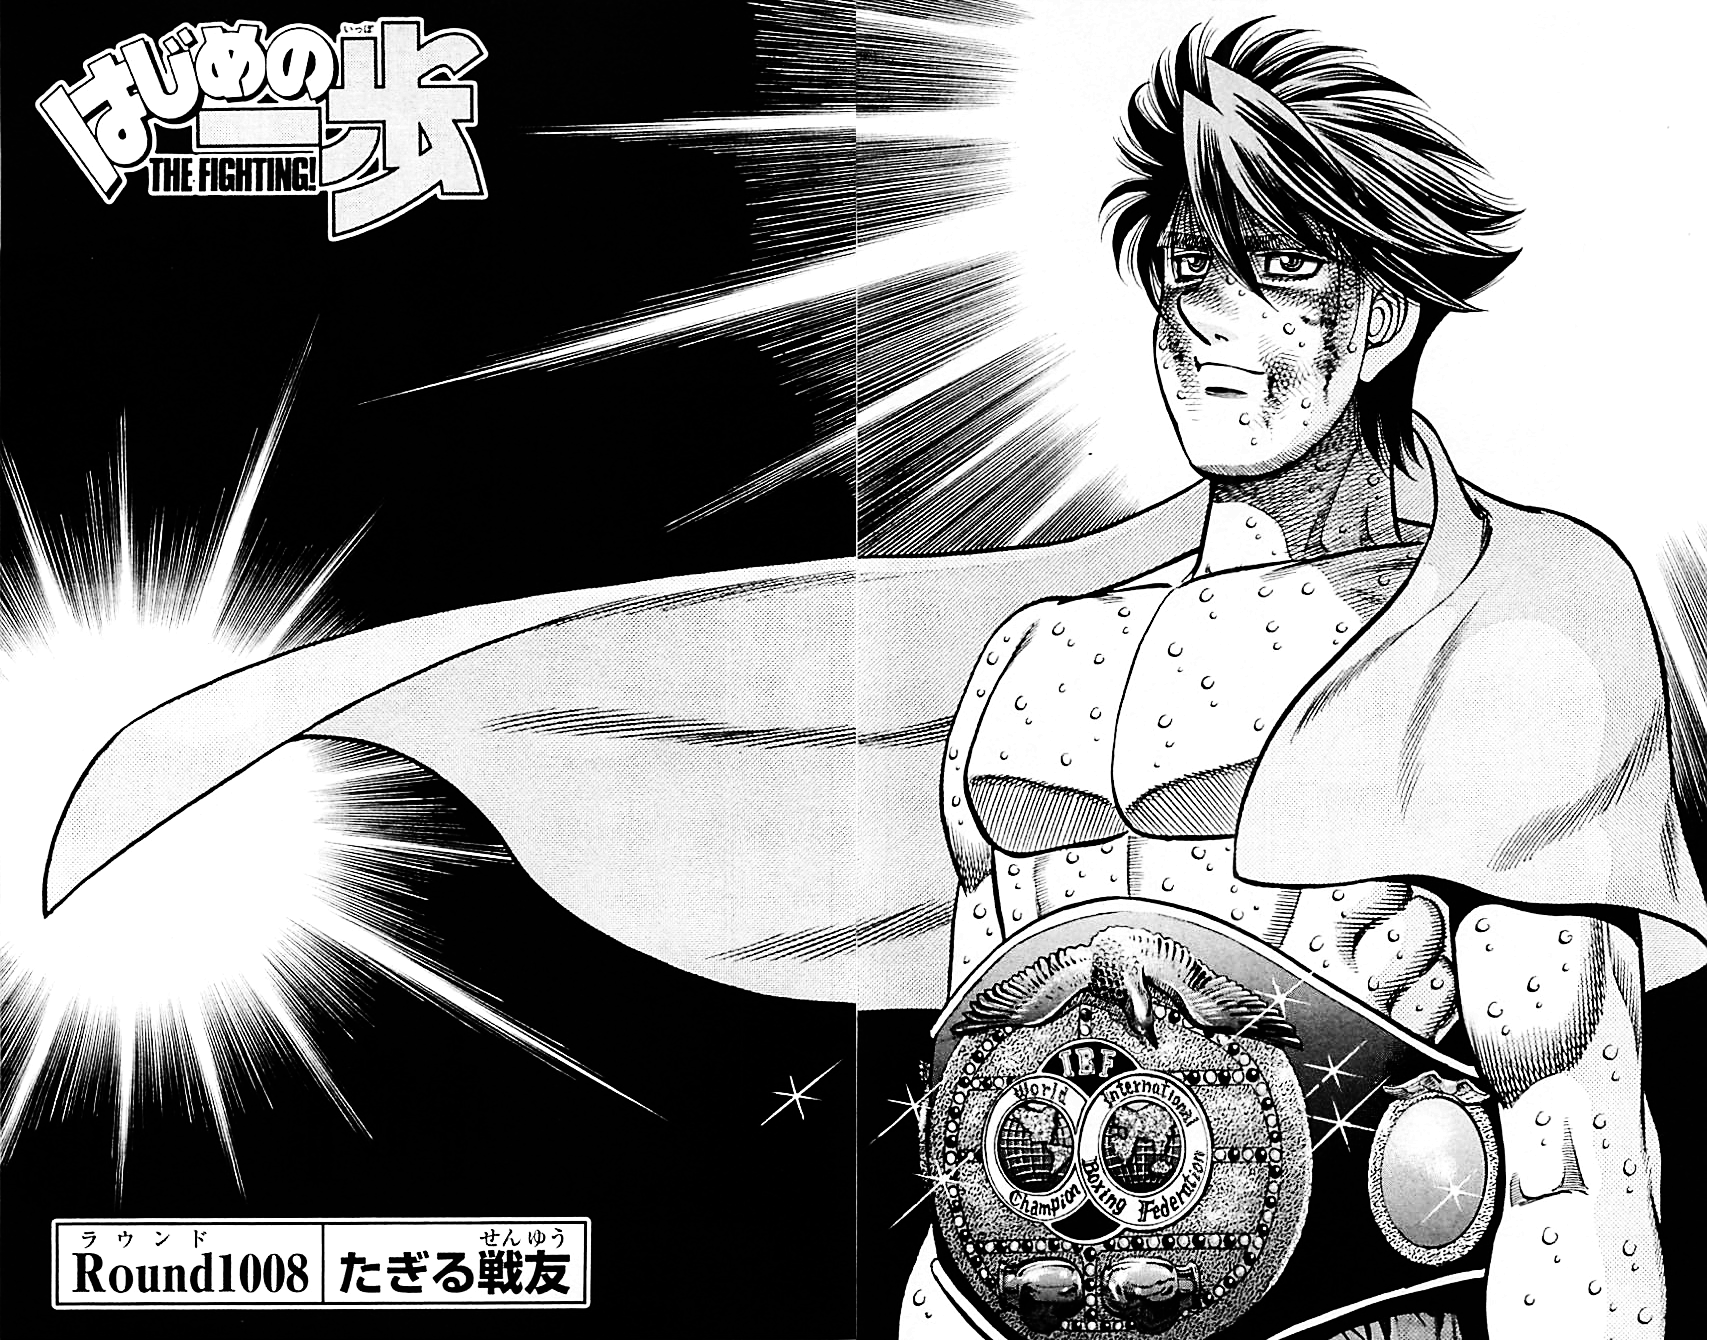 Round 560, El Curso del Destino, Hajime no Ippo Manga Esp., Continuación  después del Anime Round 560, El Curso del Destino, Hajime no Ippo Manga  Esp., By Sirius